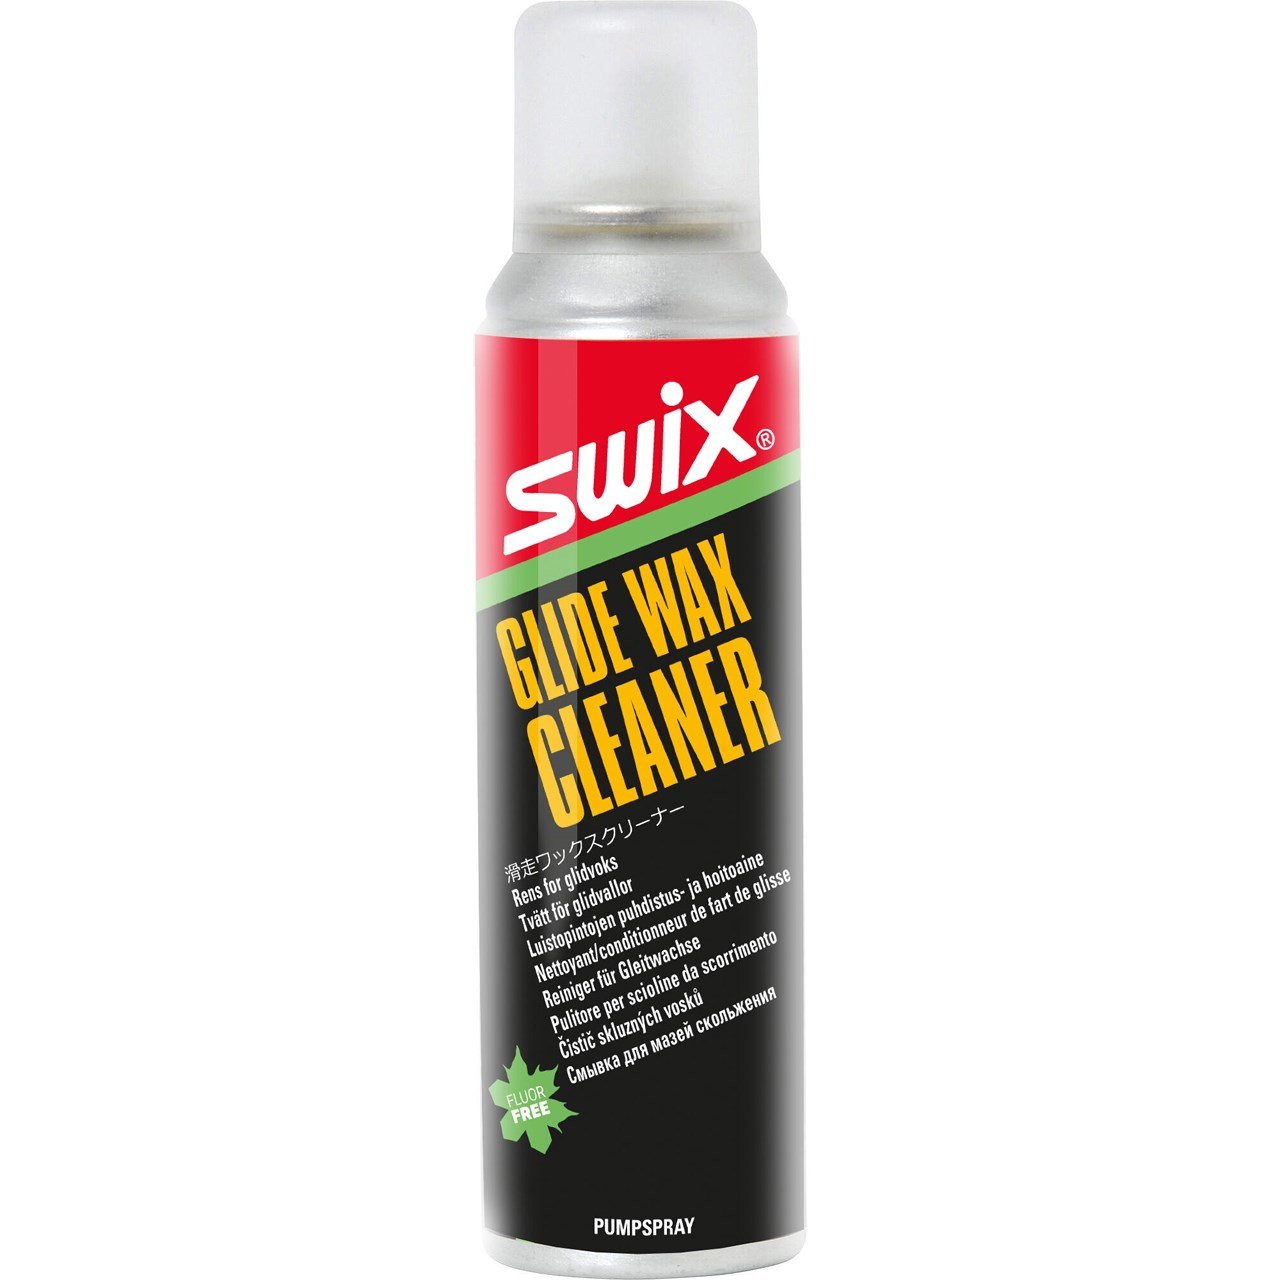 Swix Glide Wax Cleaner 150ml